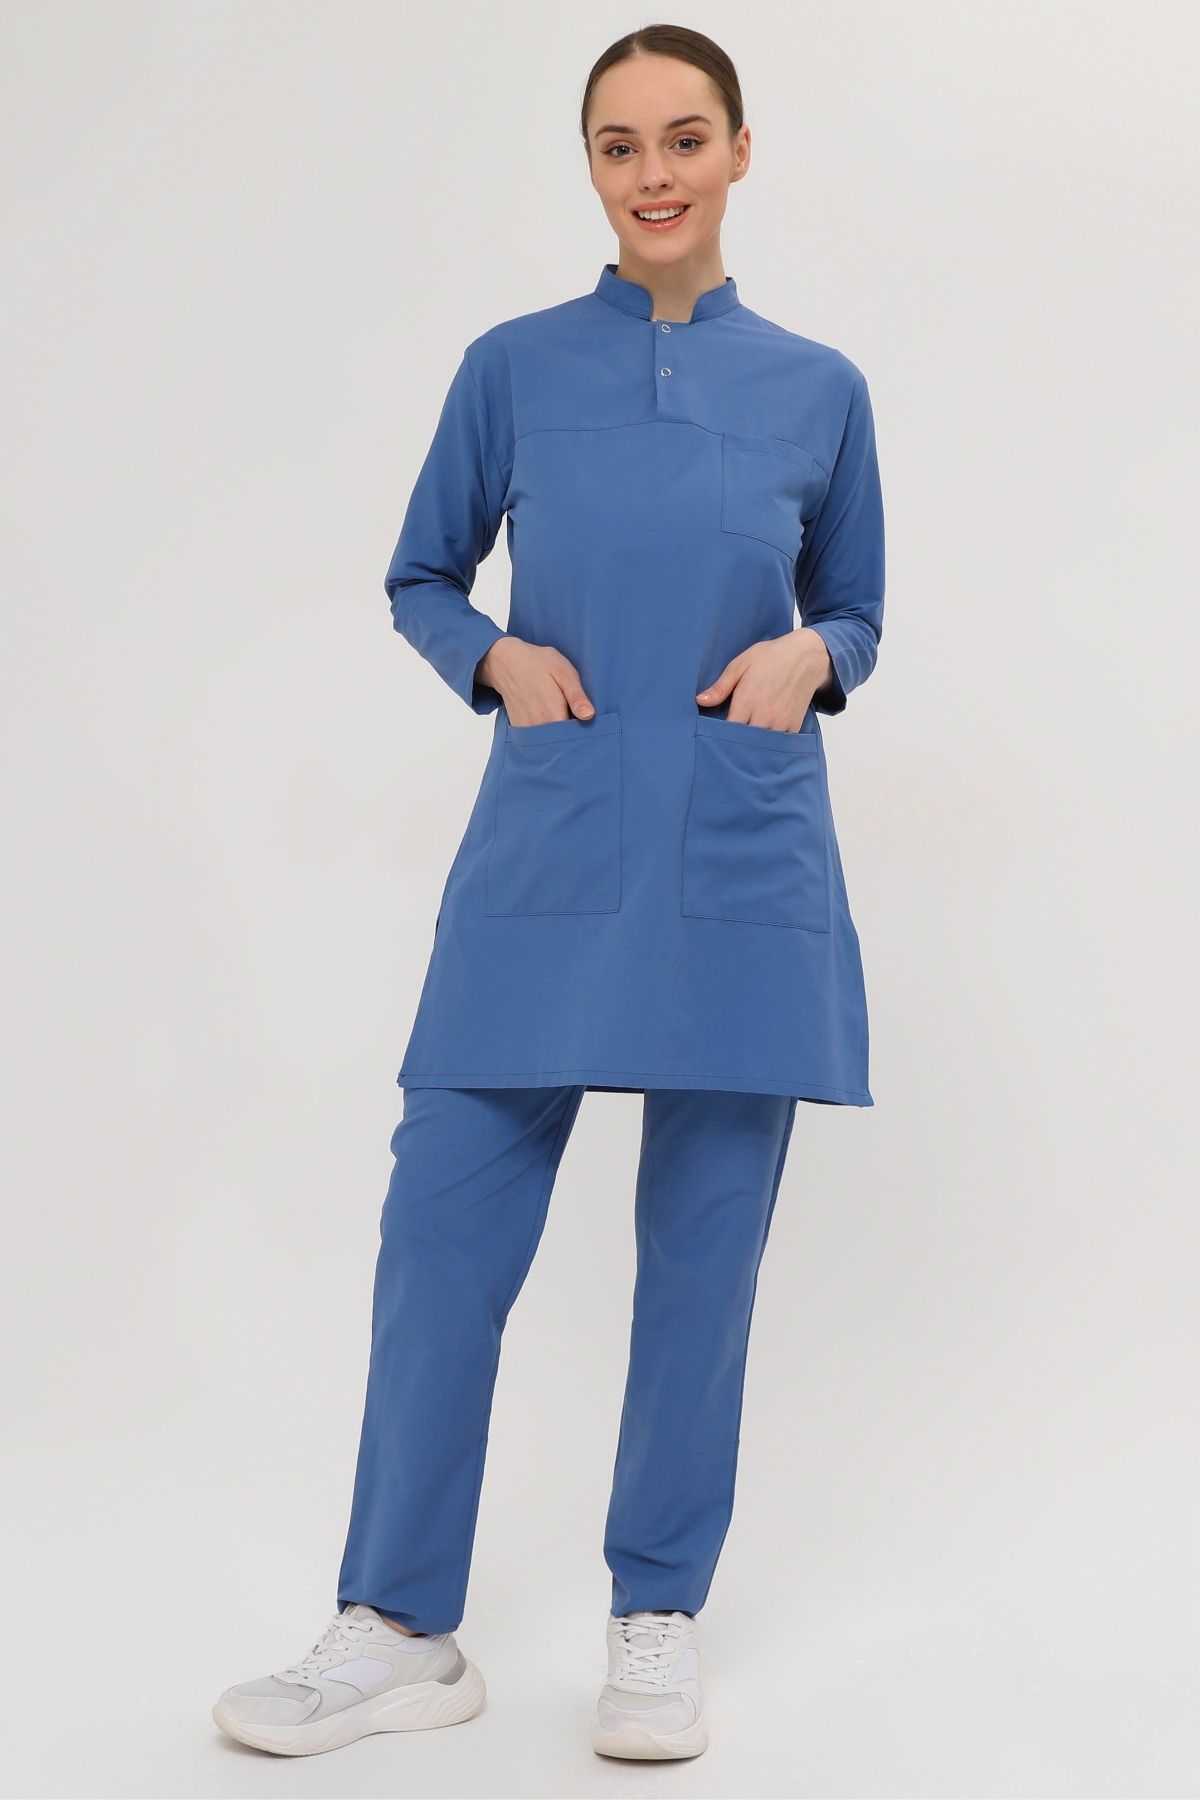 Medinila Thin Flex 2 Çıt Çıtlı Tesettür Indigo Mavi Likralı Terikoton Takım - Kadın Hemşire Forması